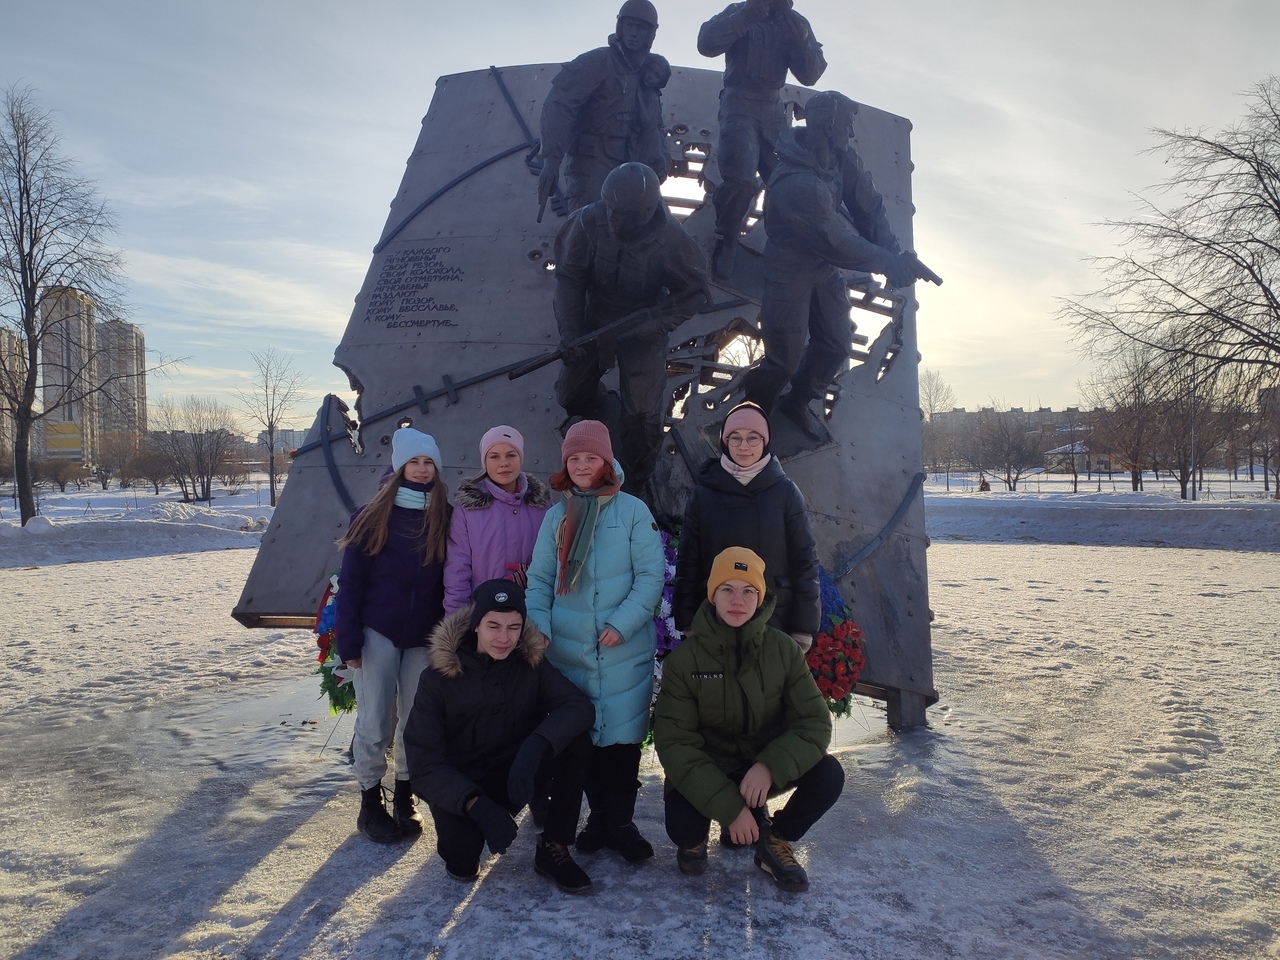 18 января День прорыва блокады Ленинграда